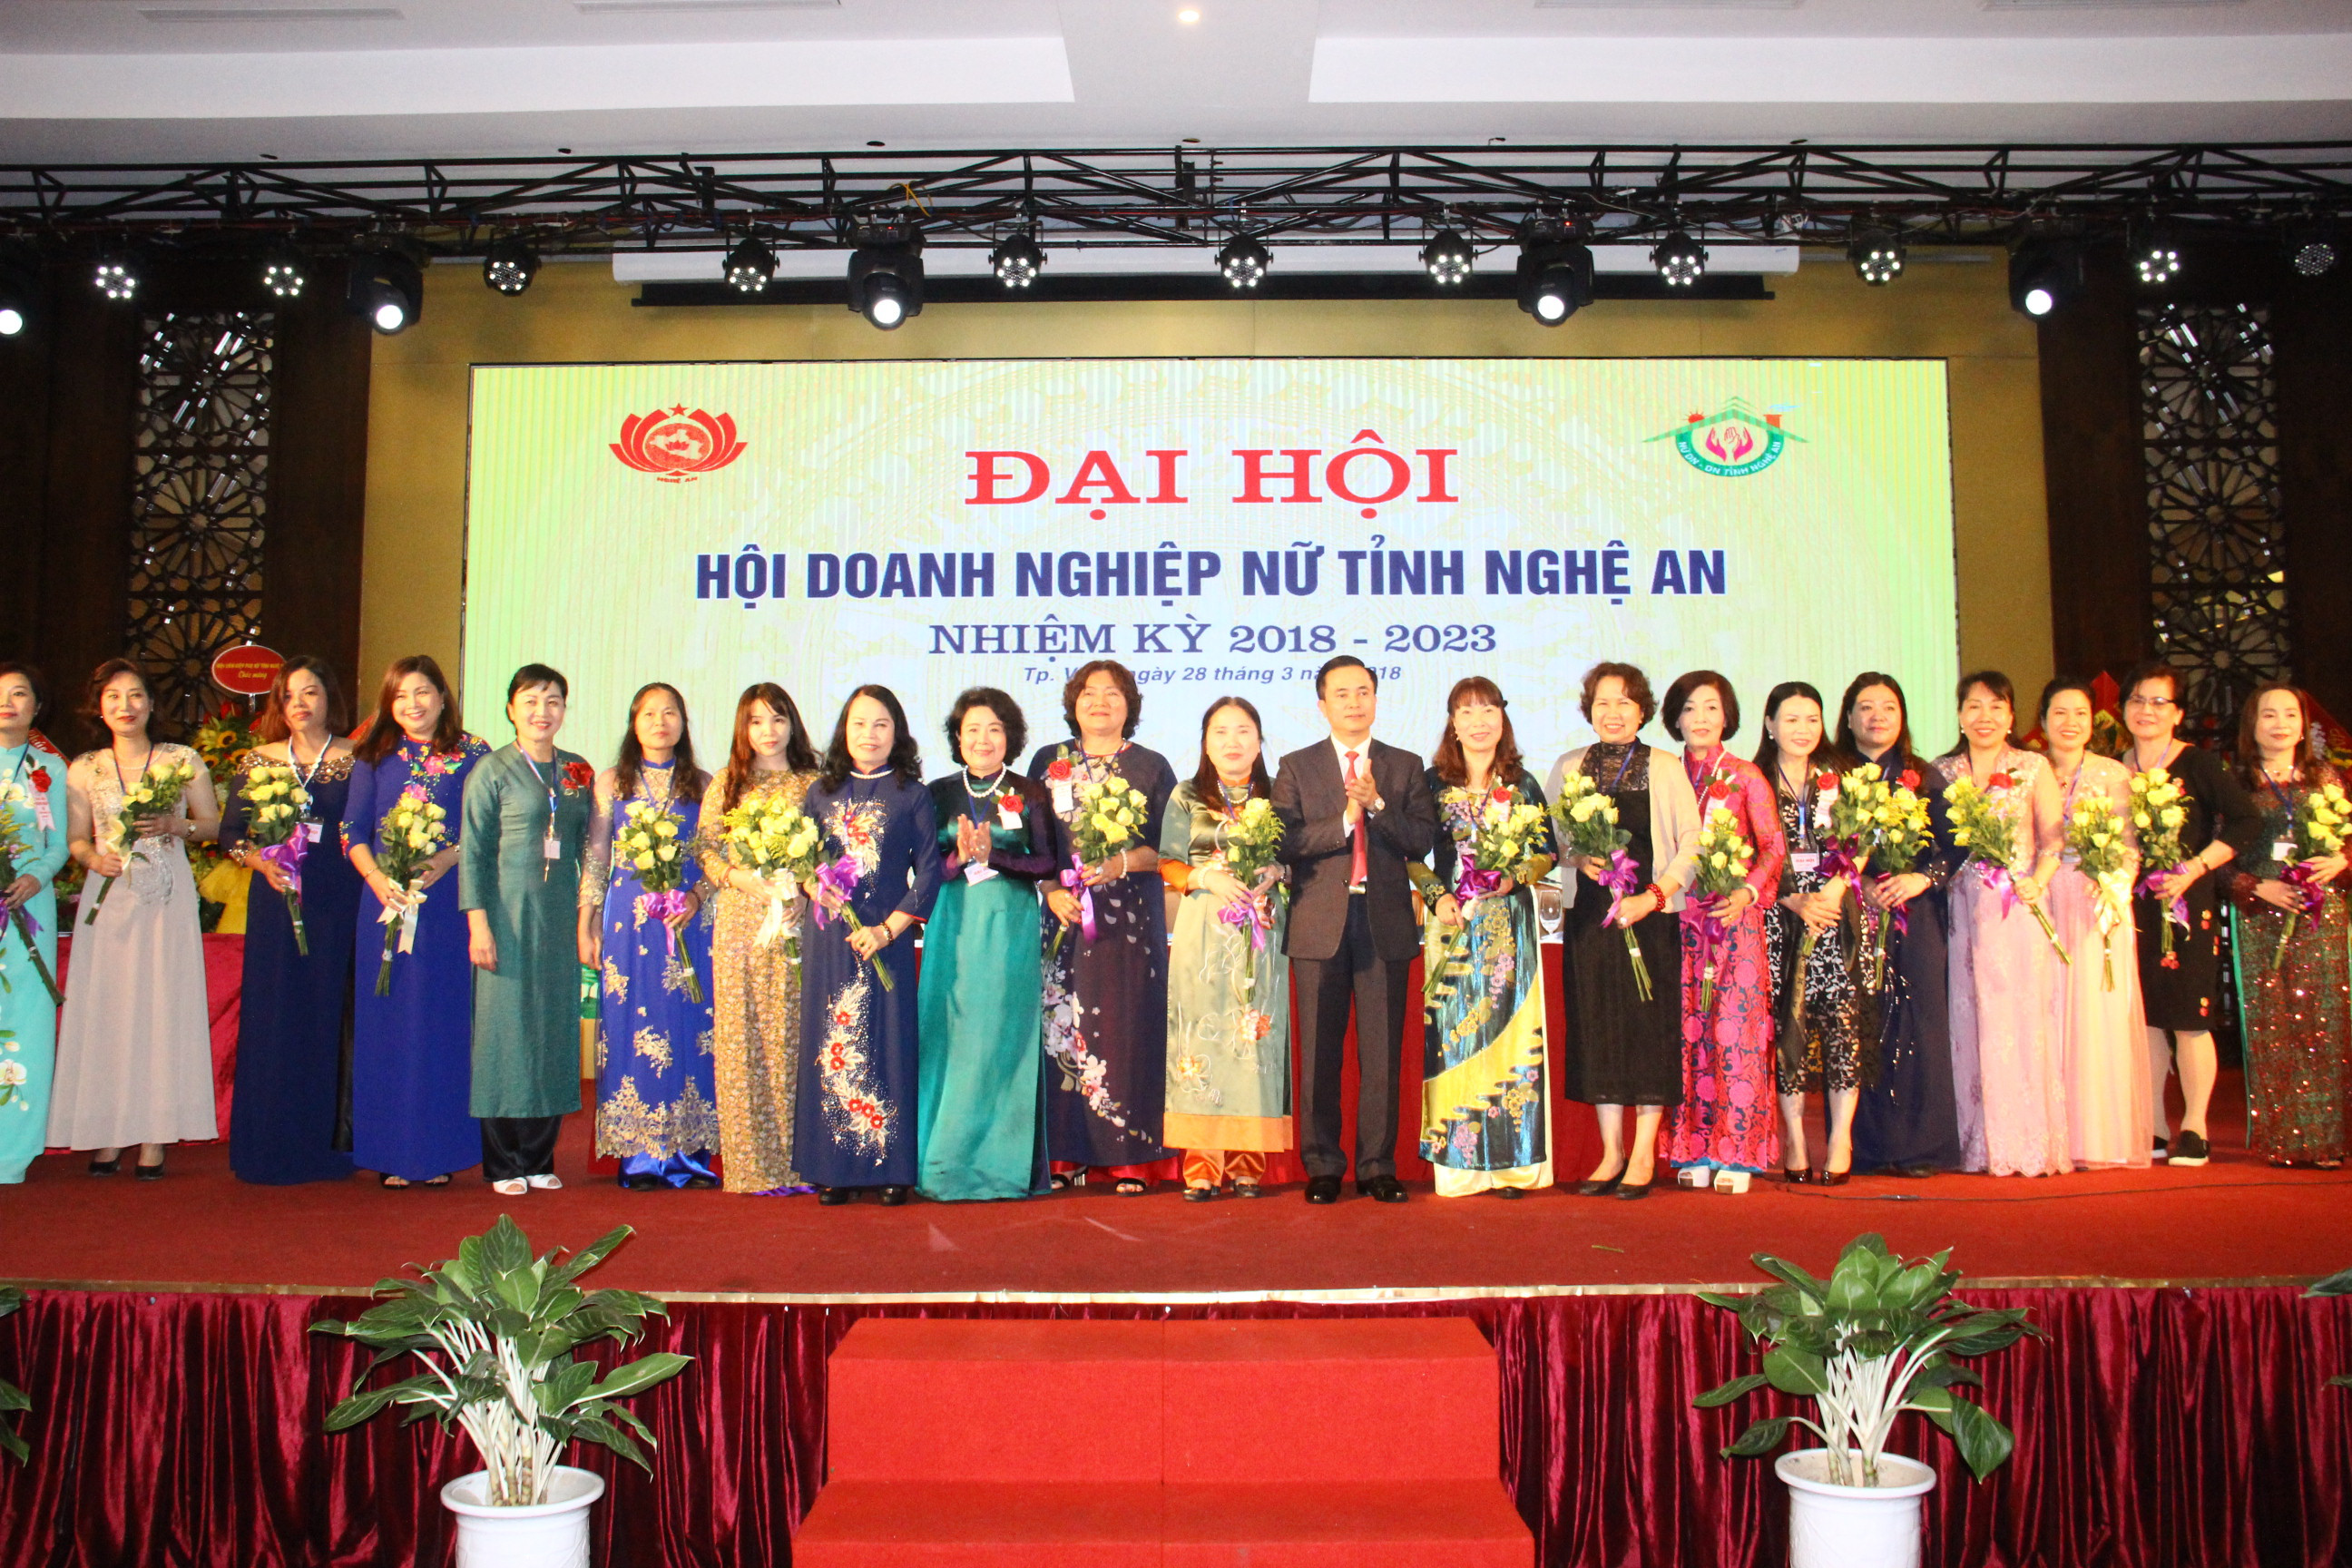 Các đồng chí lãnh đạo Hội đồng doanh nhân nữ Việt nam và tỉnh Nghệ An chúc mừng BCH Hội doanh nghiệp nữ lần thé nhất. Ảnh Hoàng Vĩnh